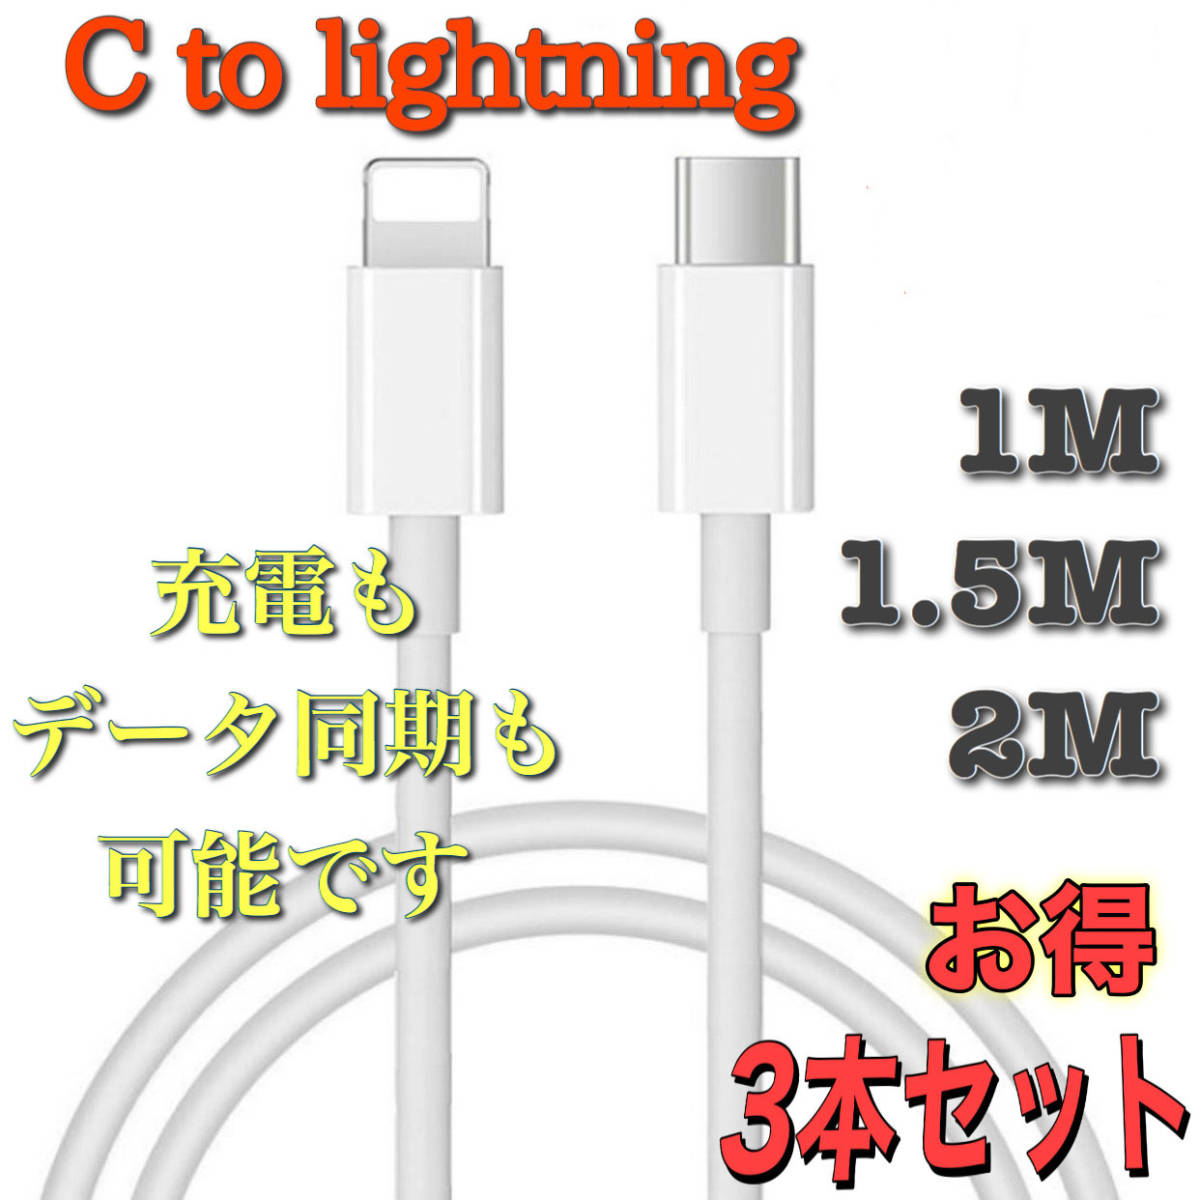 USB C ライトニングケーブル iPhone 充電ケーブル Type C Lightning 急速充電 1m 1.5m 2m 3本セット